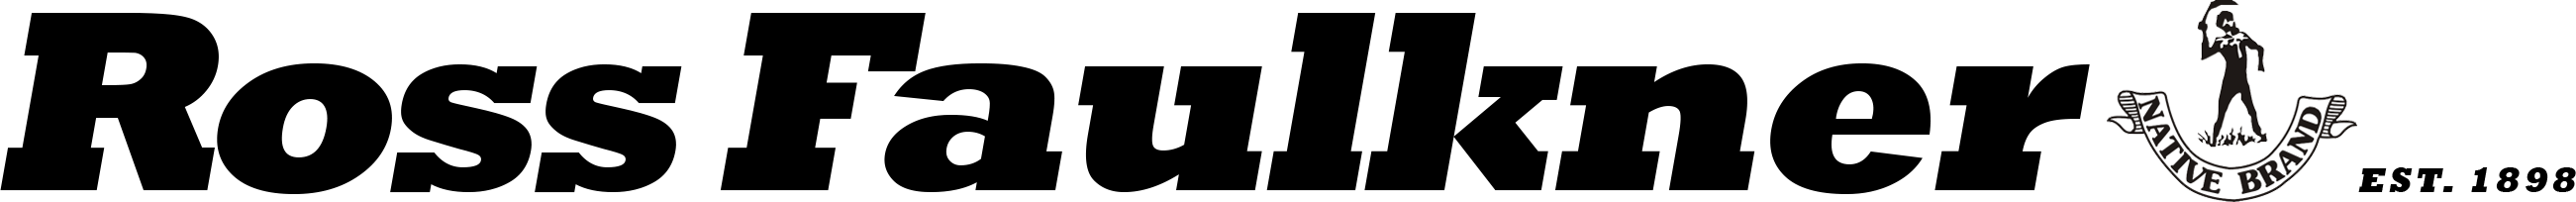 RossFaulkner Logo